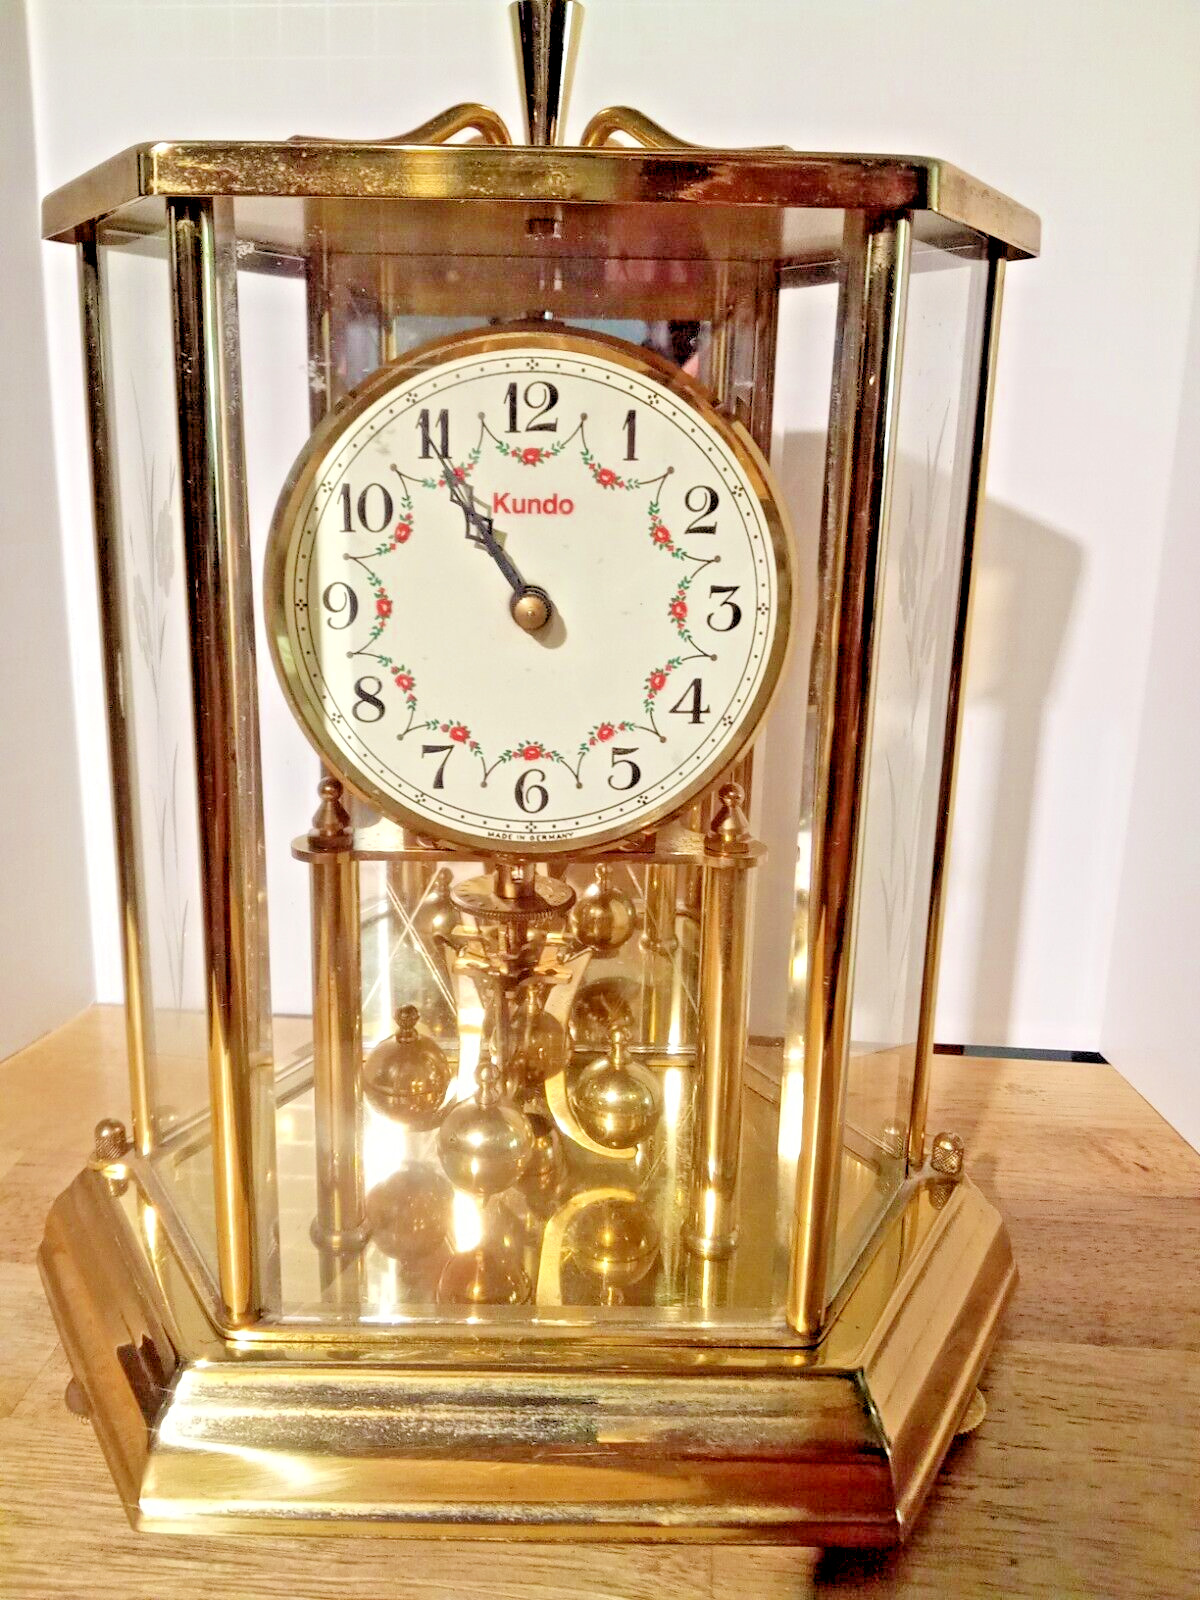 Kundo K & O 400 day Anniversary Glass Dome Mantle Clock, Pre-Wound .